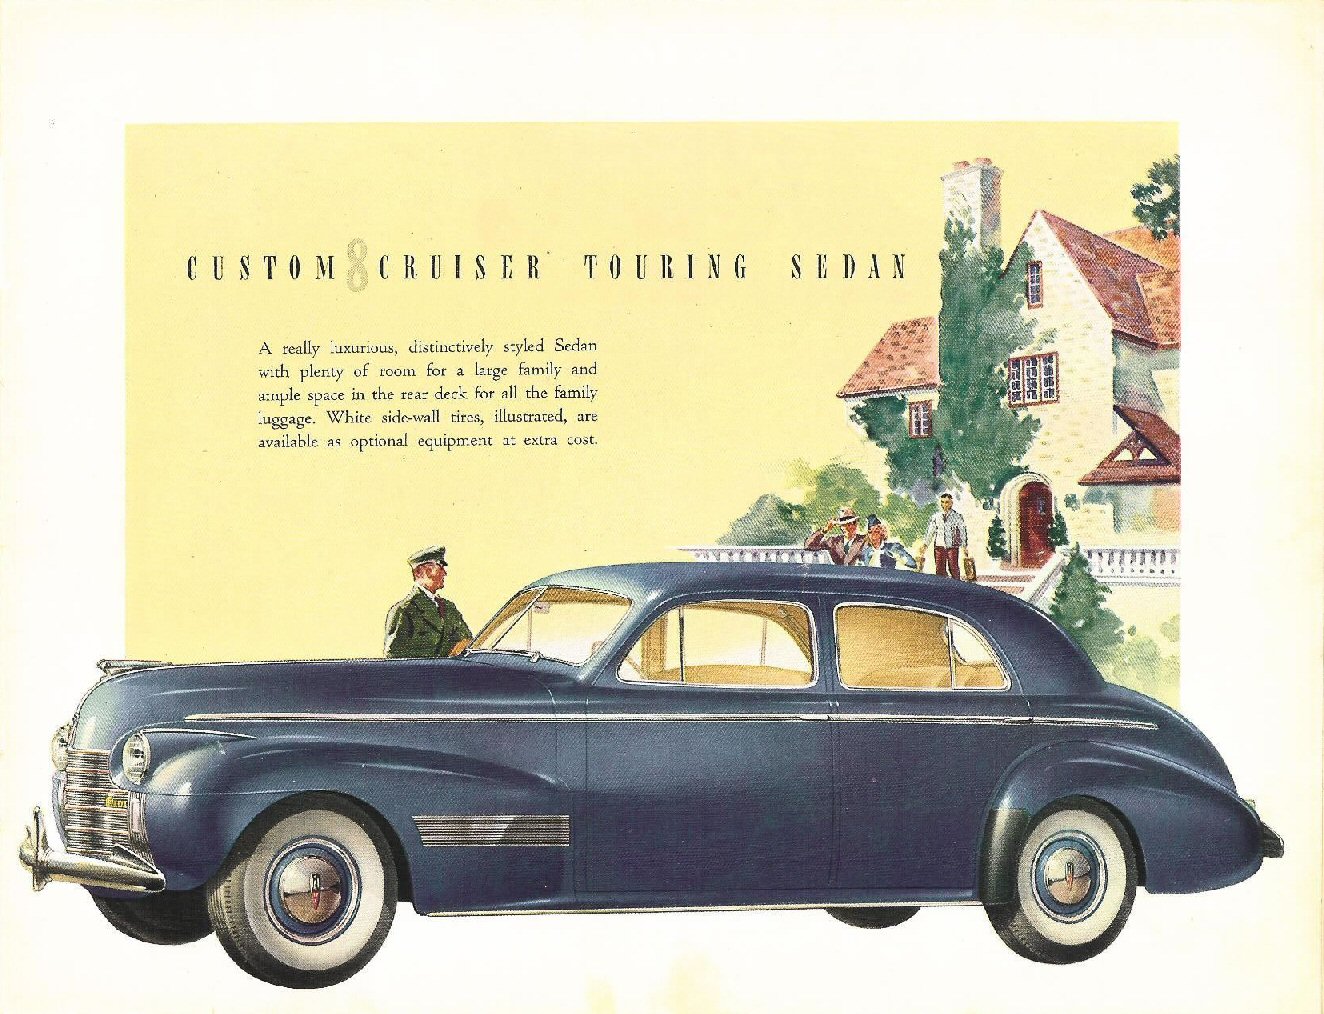 1940_Oldsmobile-25